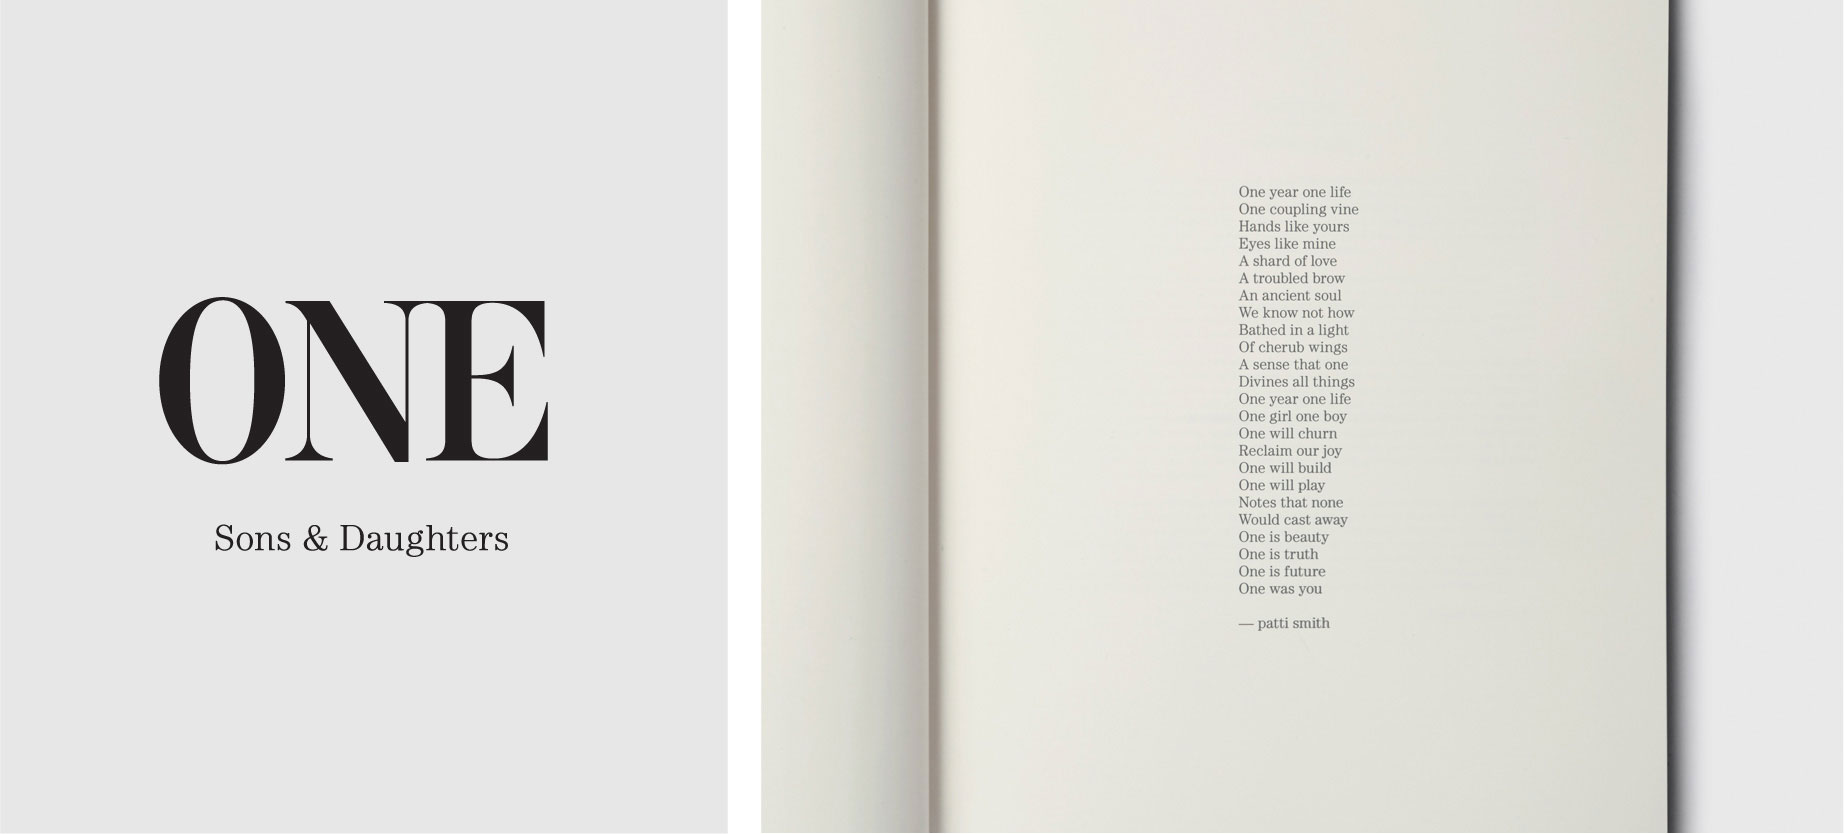 Editorial Design, One by Edward Mapplethorpe, Forward by Patti Smith